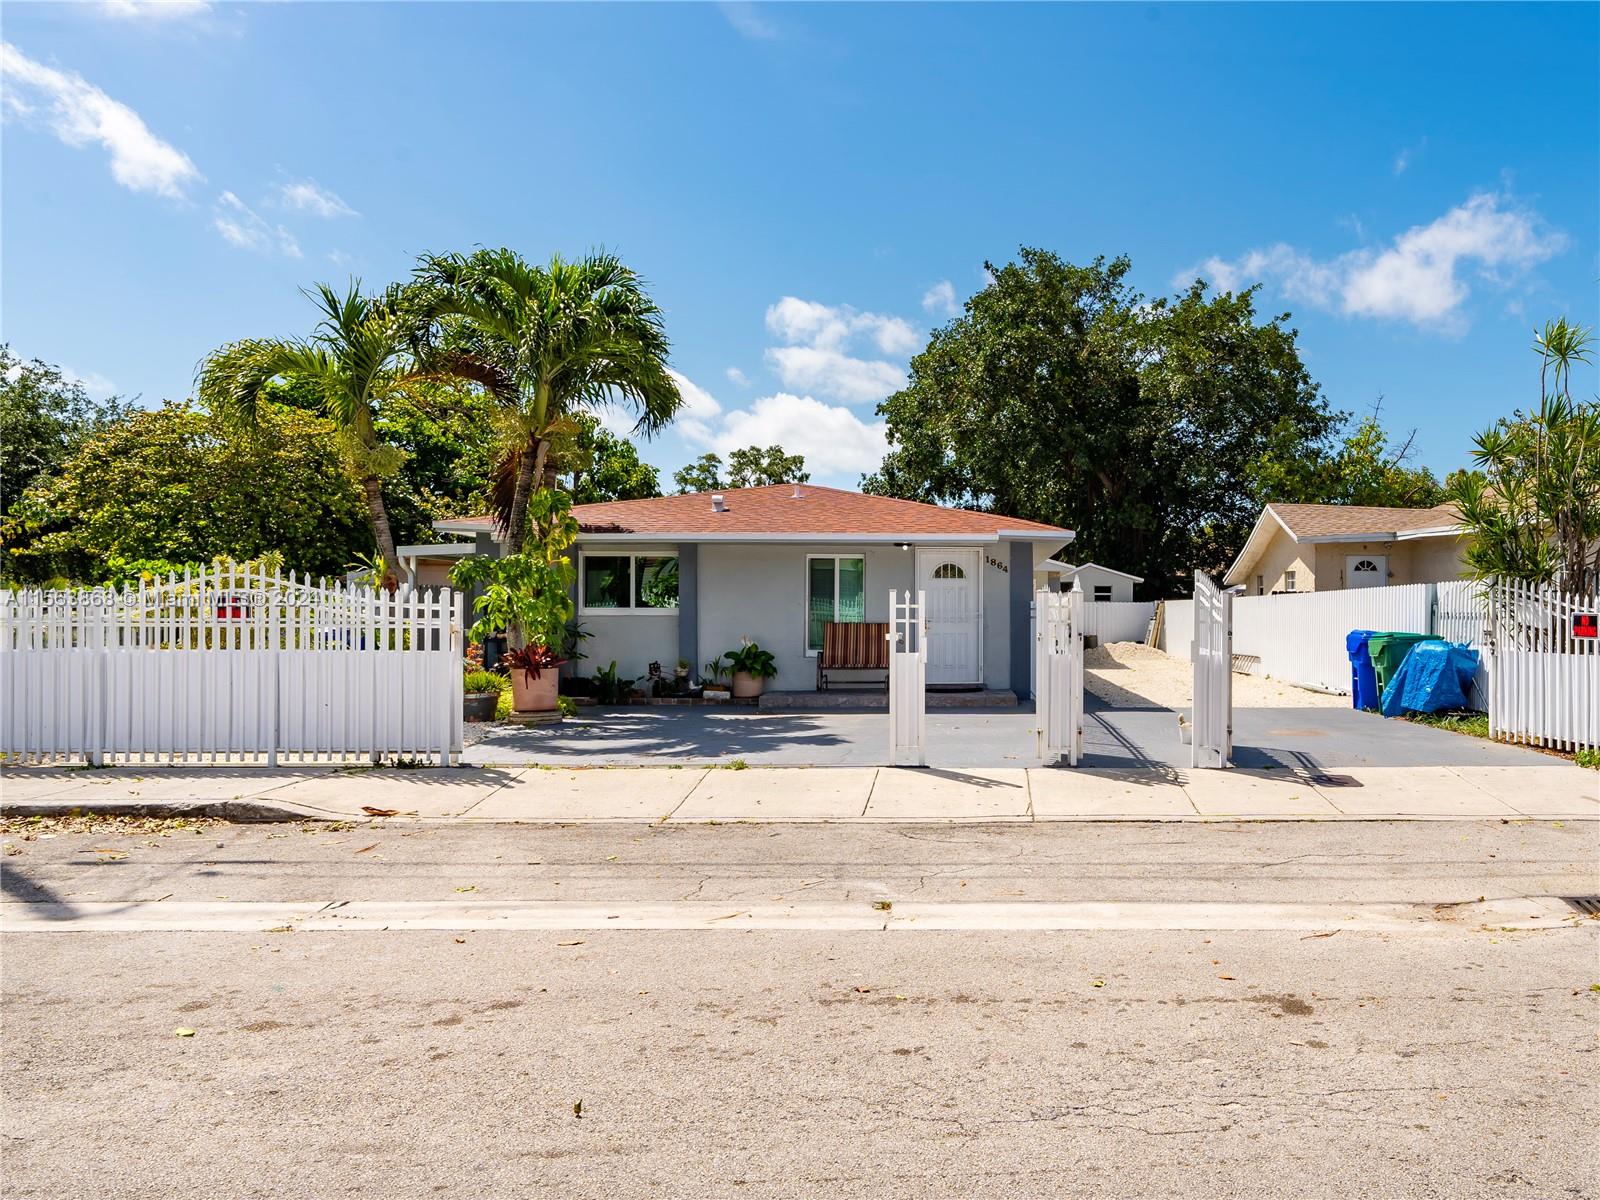 Rental Property at 1864 Nw 27th St St, Miami, Broward County, Florida -  - $900,000 MO.